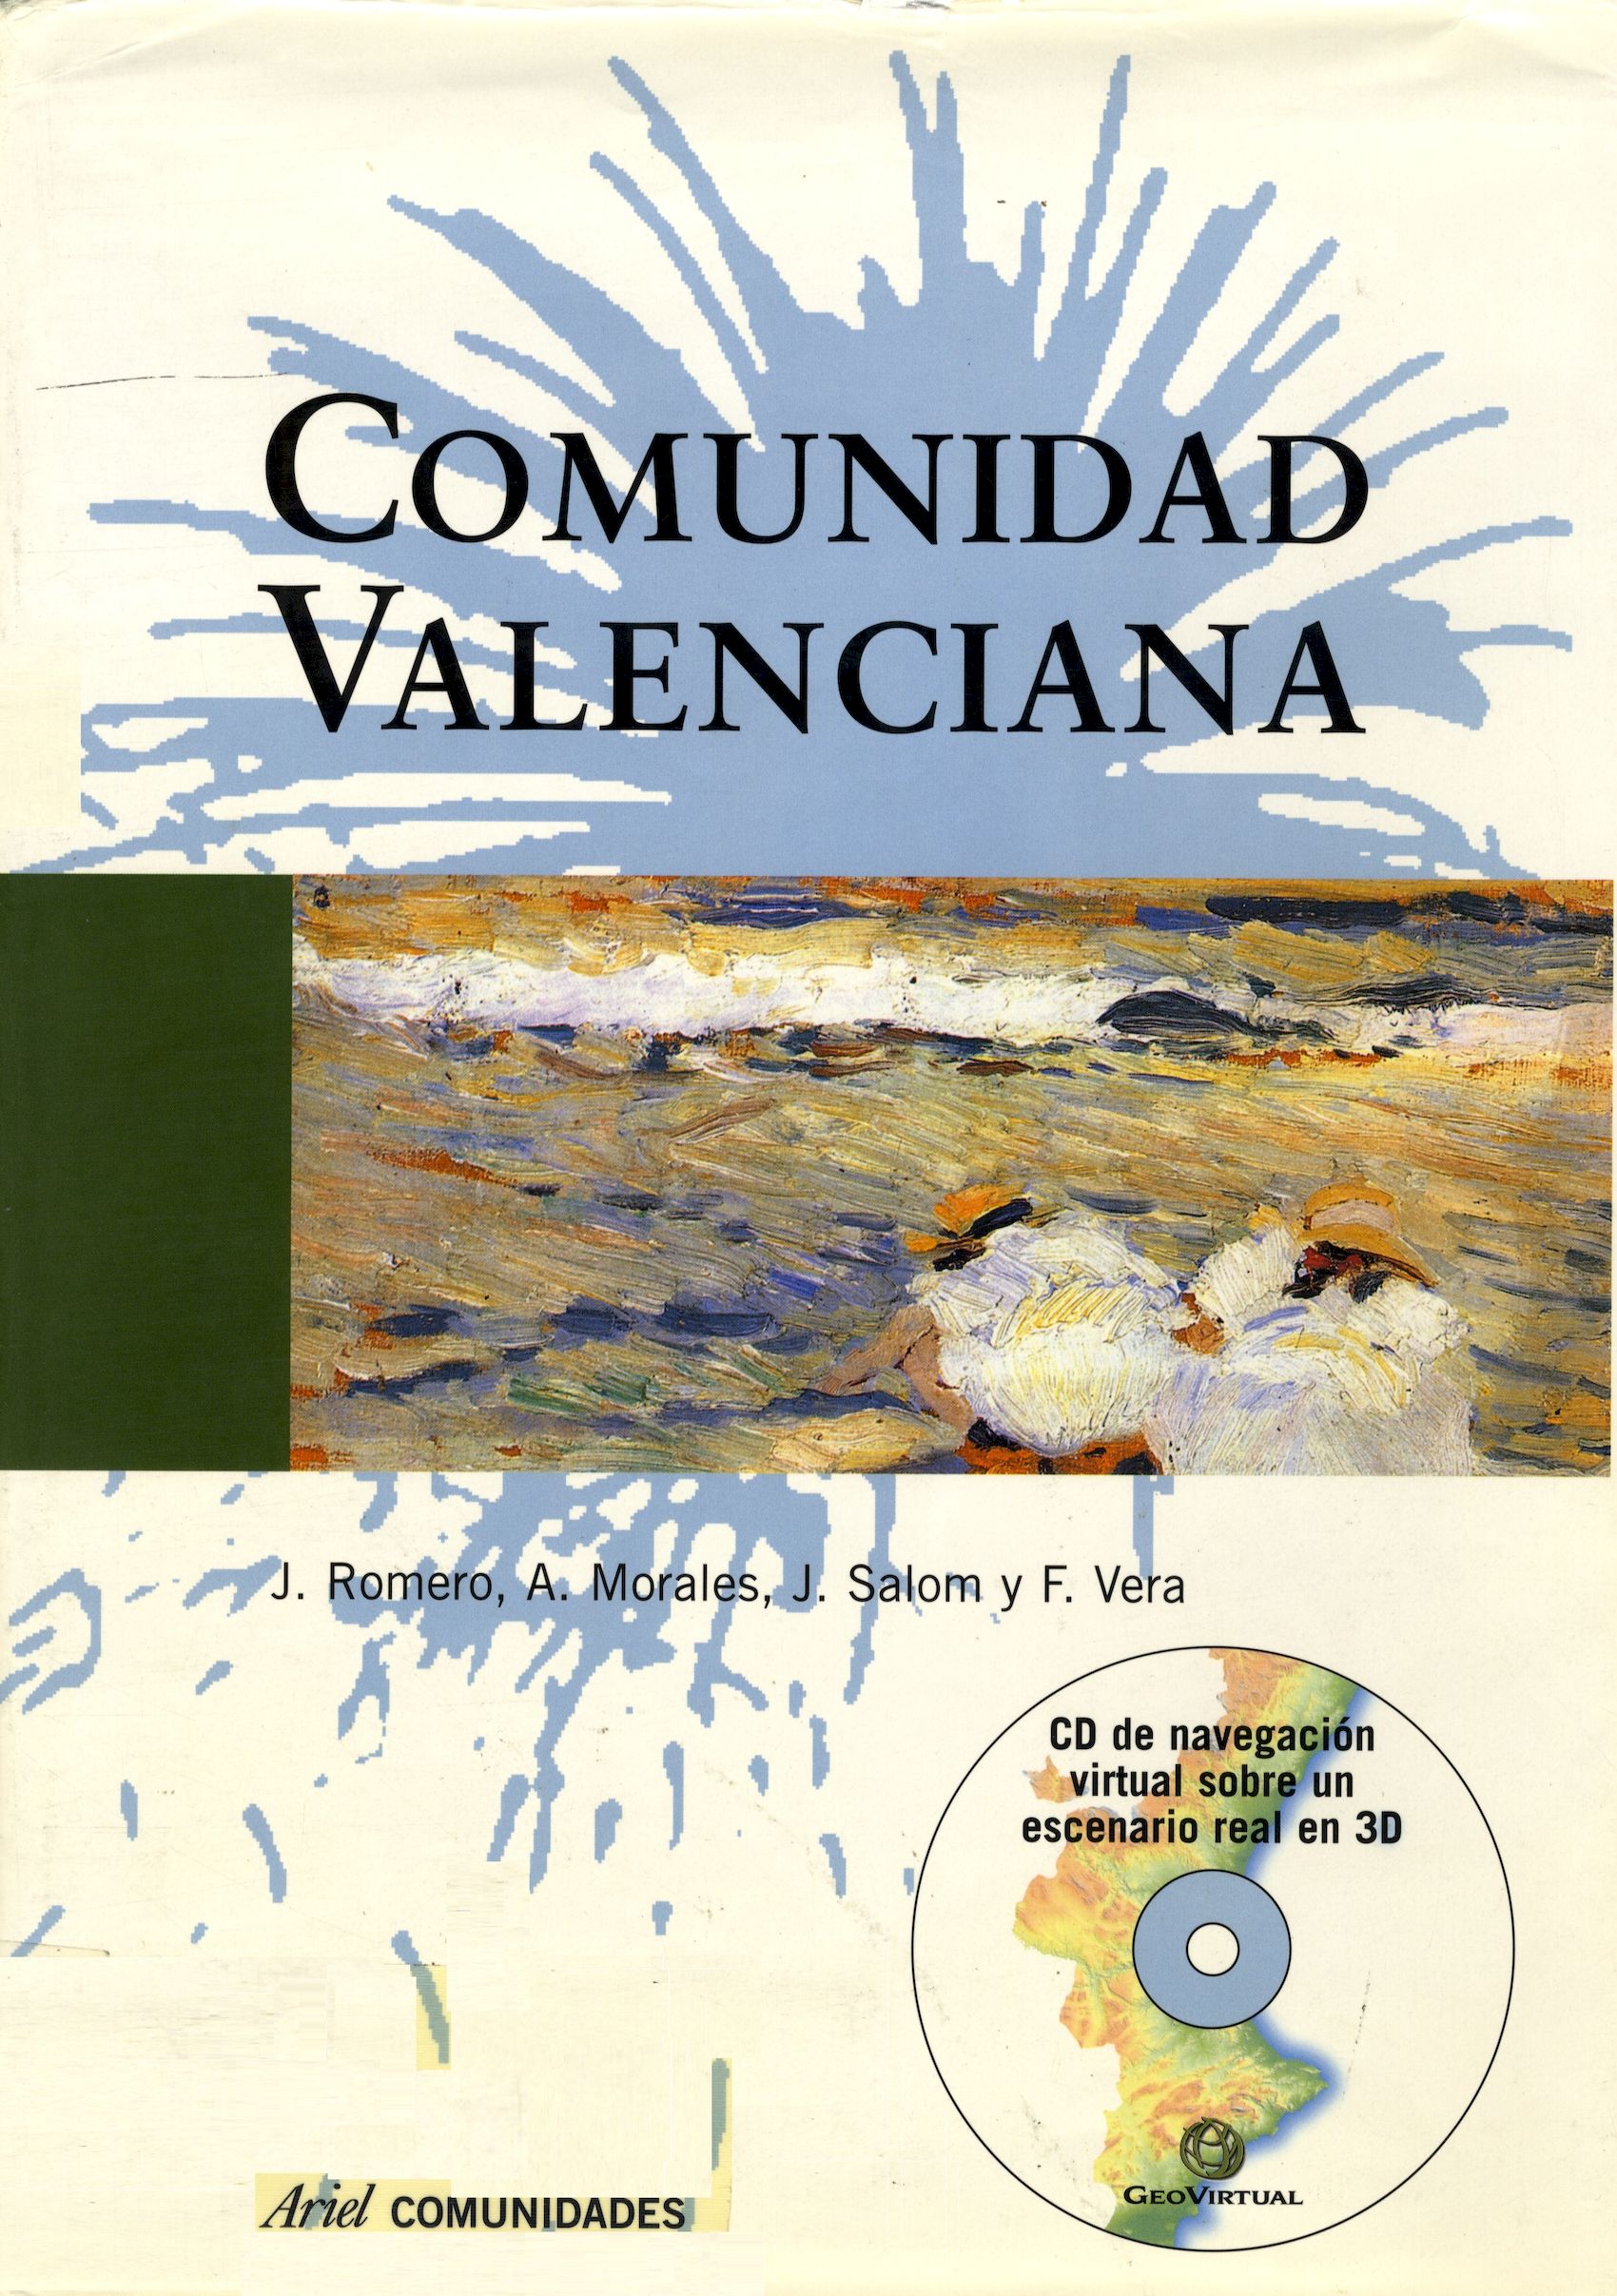 Imagen de portada del libro Comunidad valenciana